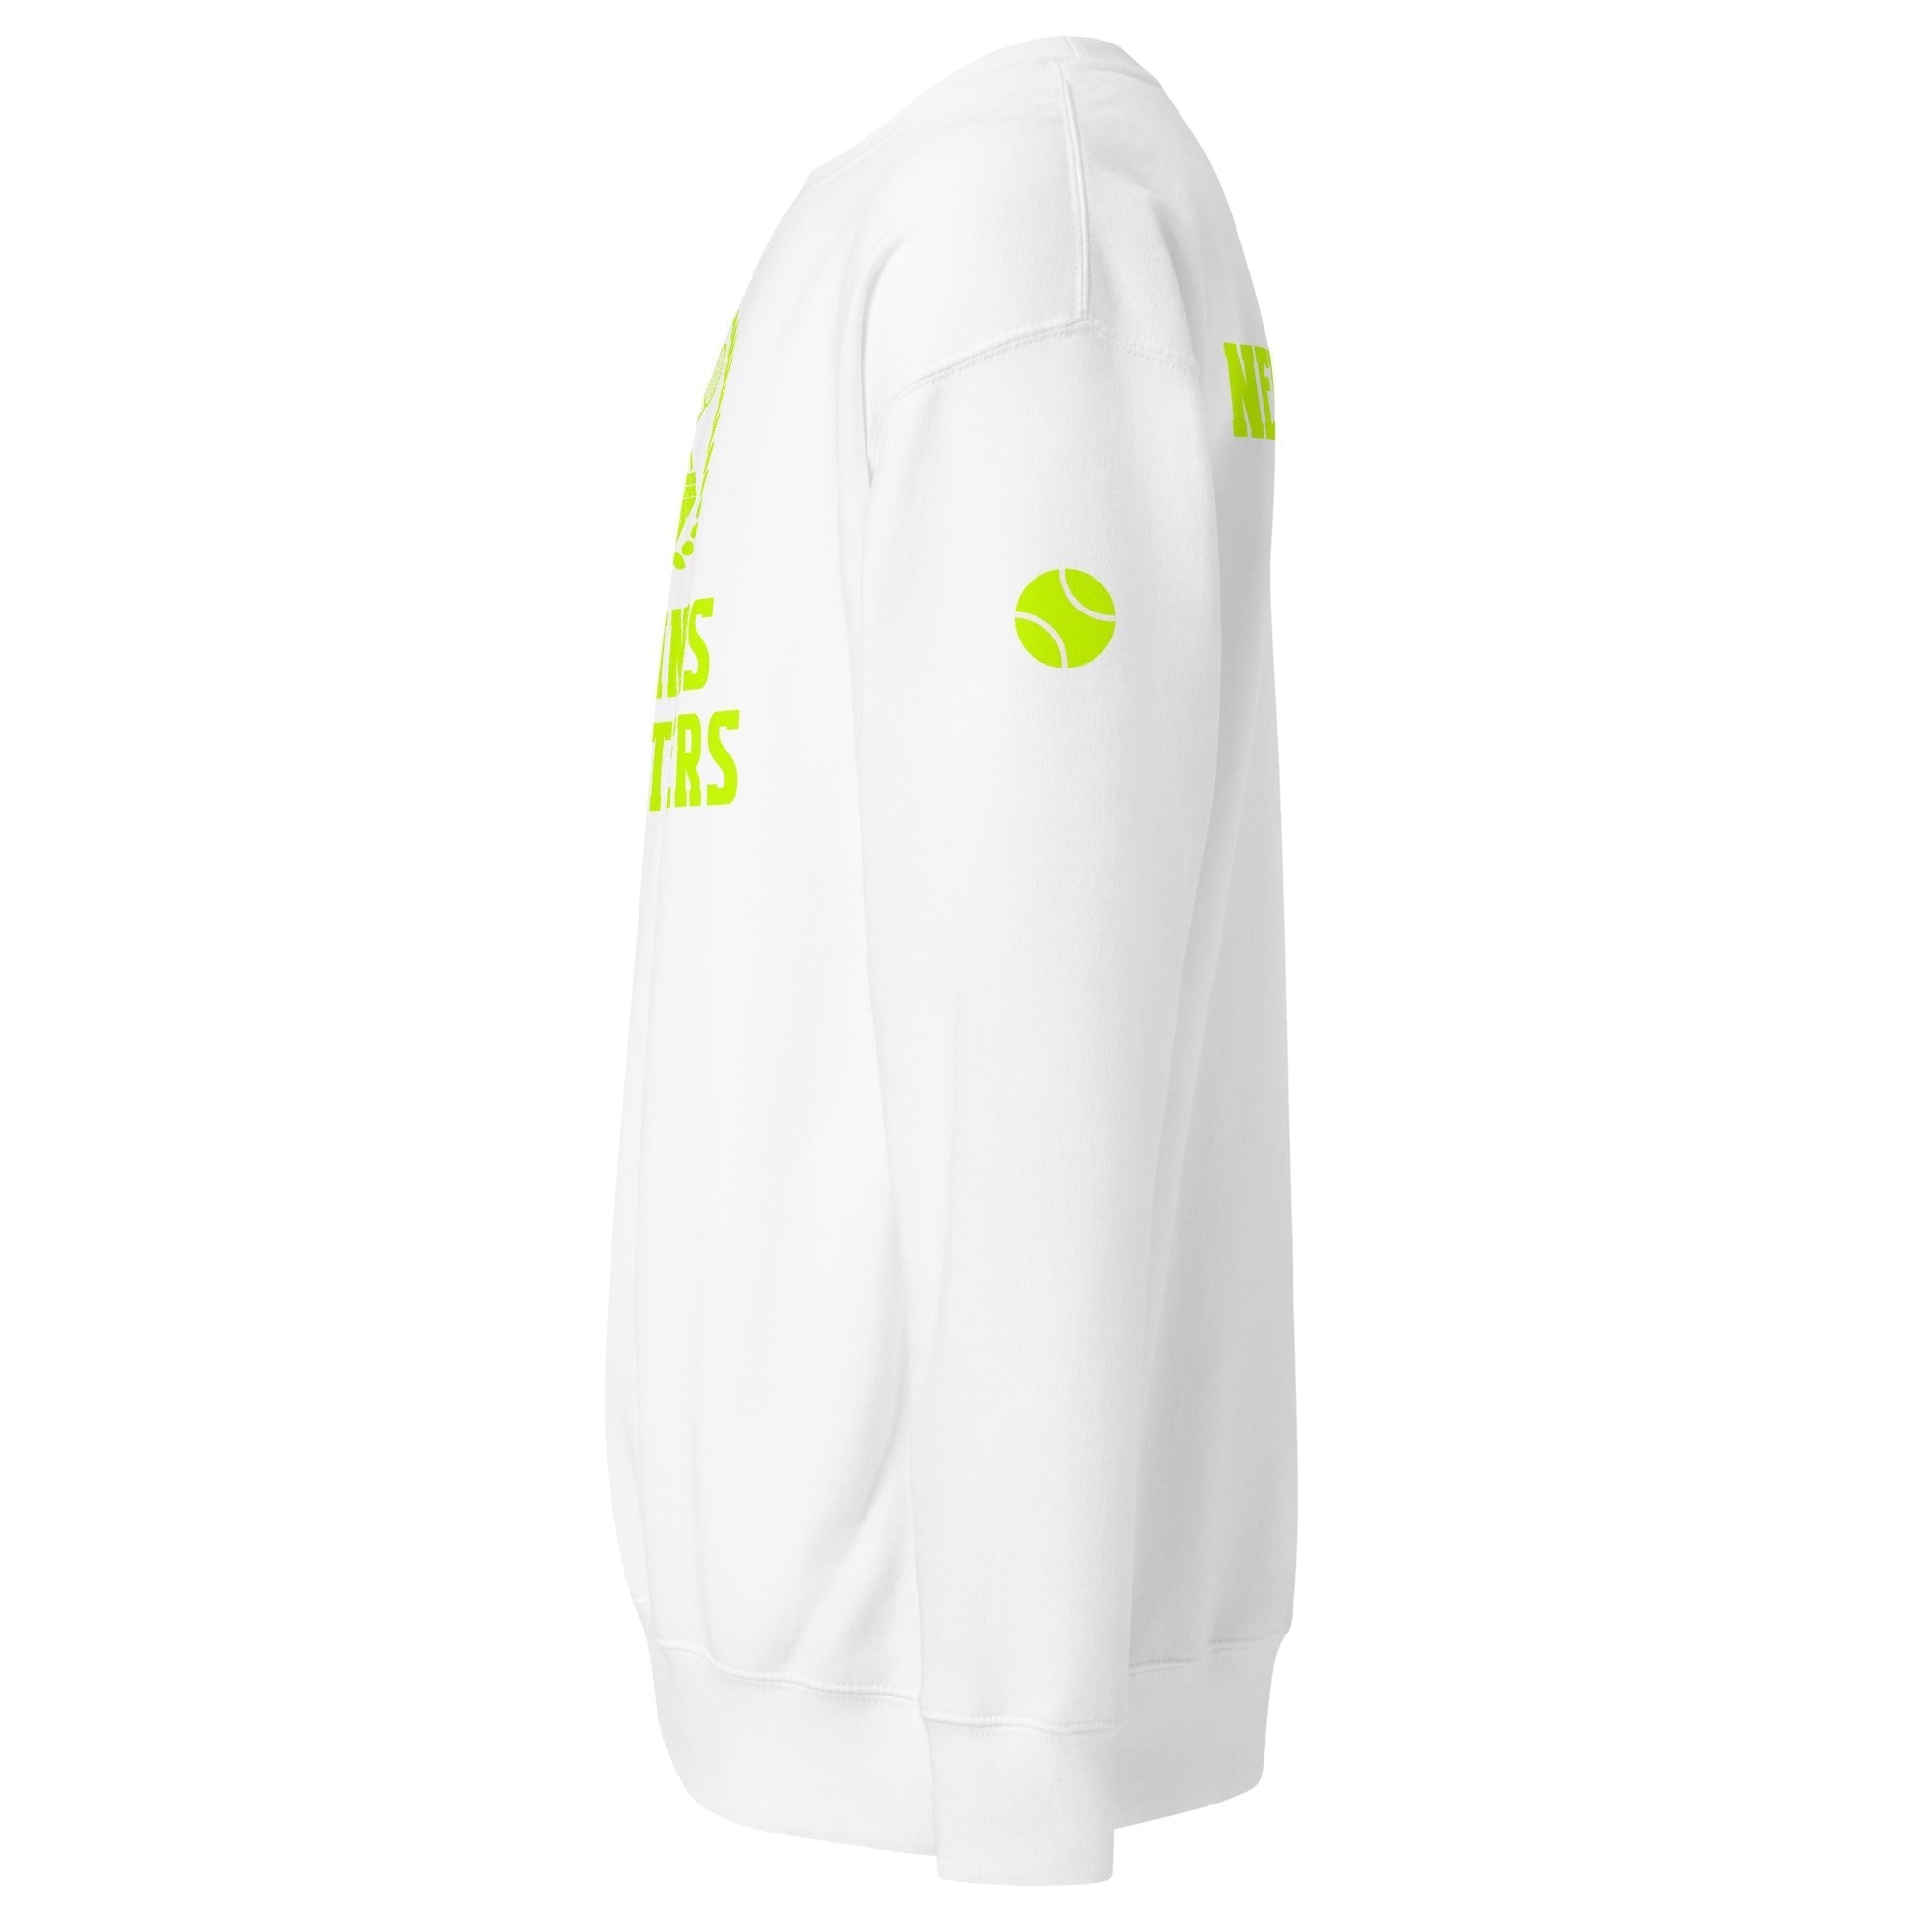 Unisex Premium Sweatshirt - Tennis Masters New York - GRAPHIC T-SHIRTS